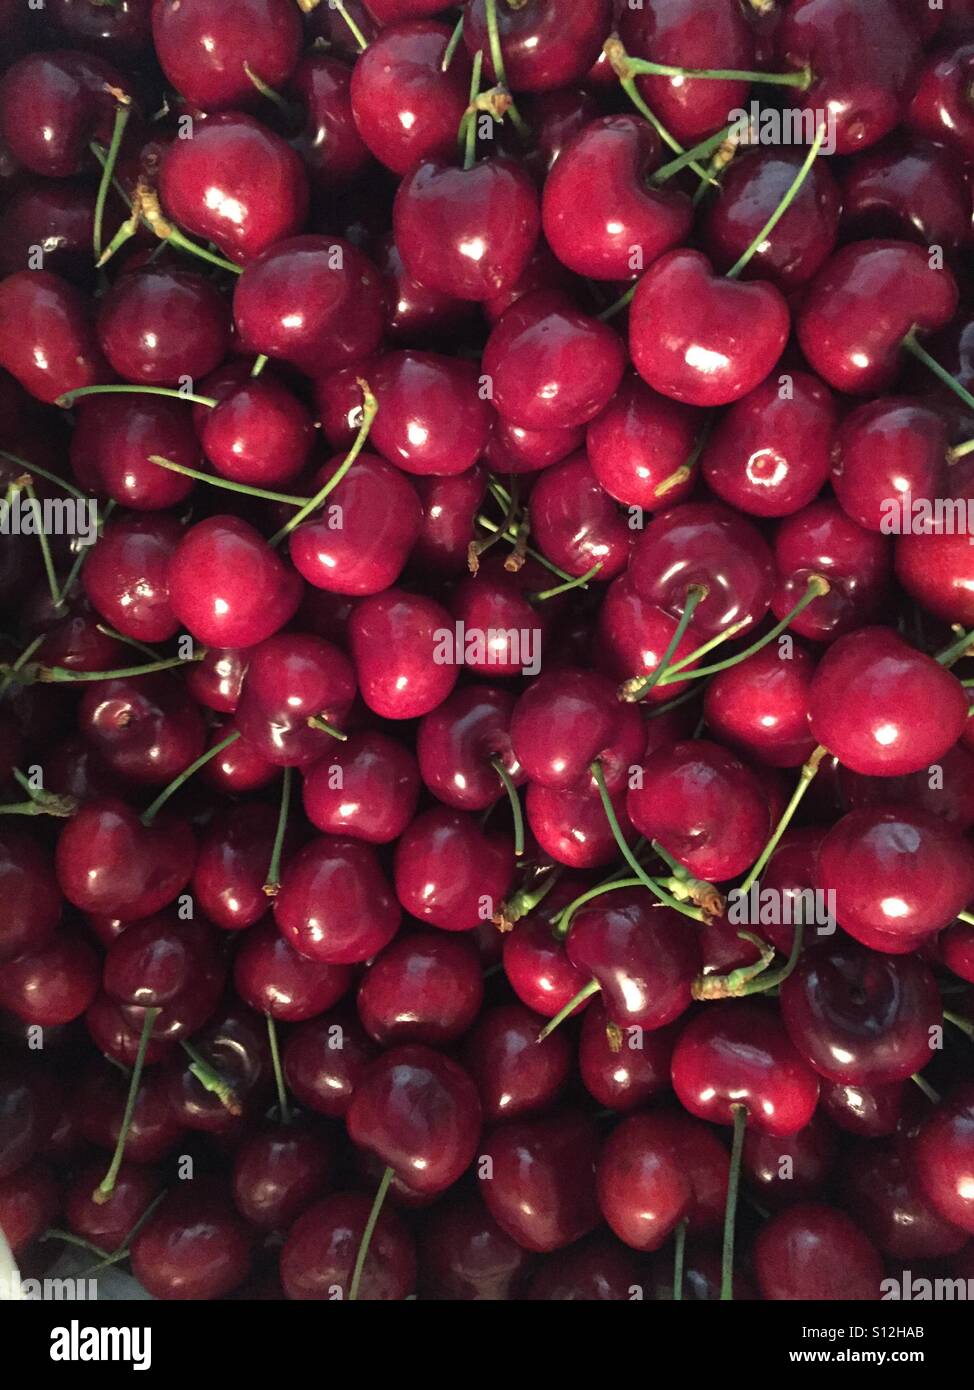 Fresh sweet cherries Stock Photo